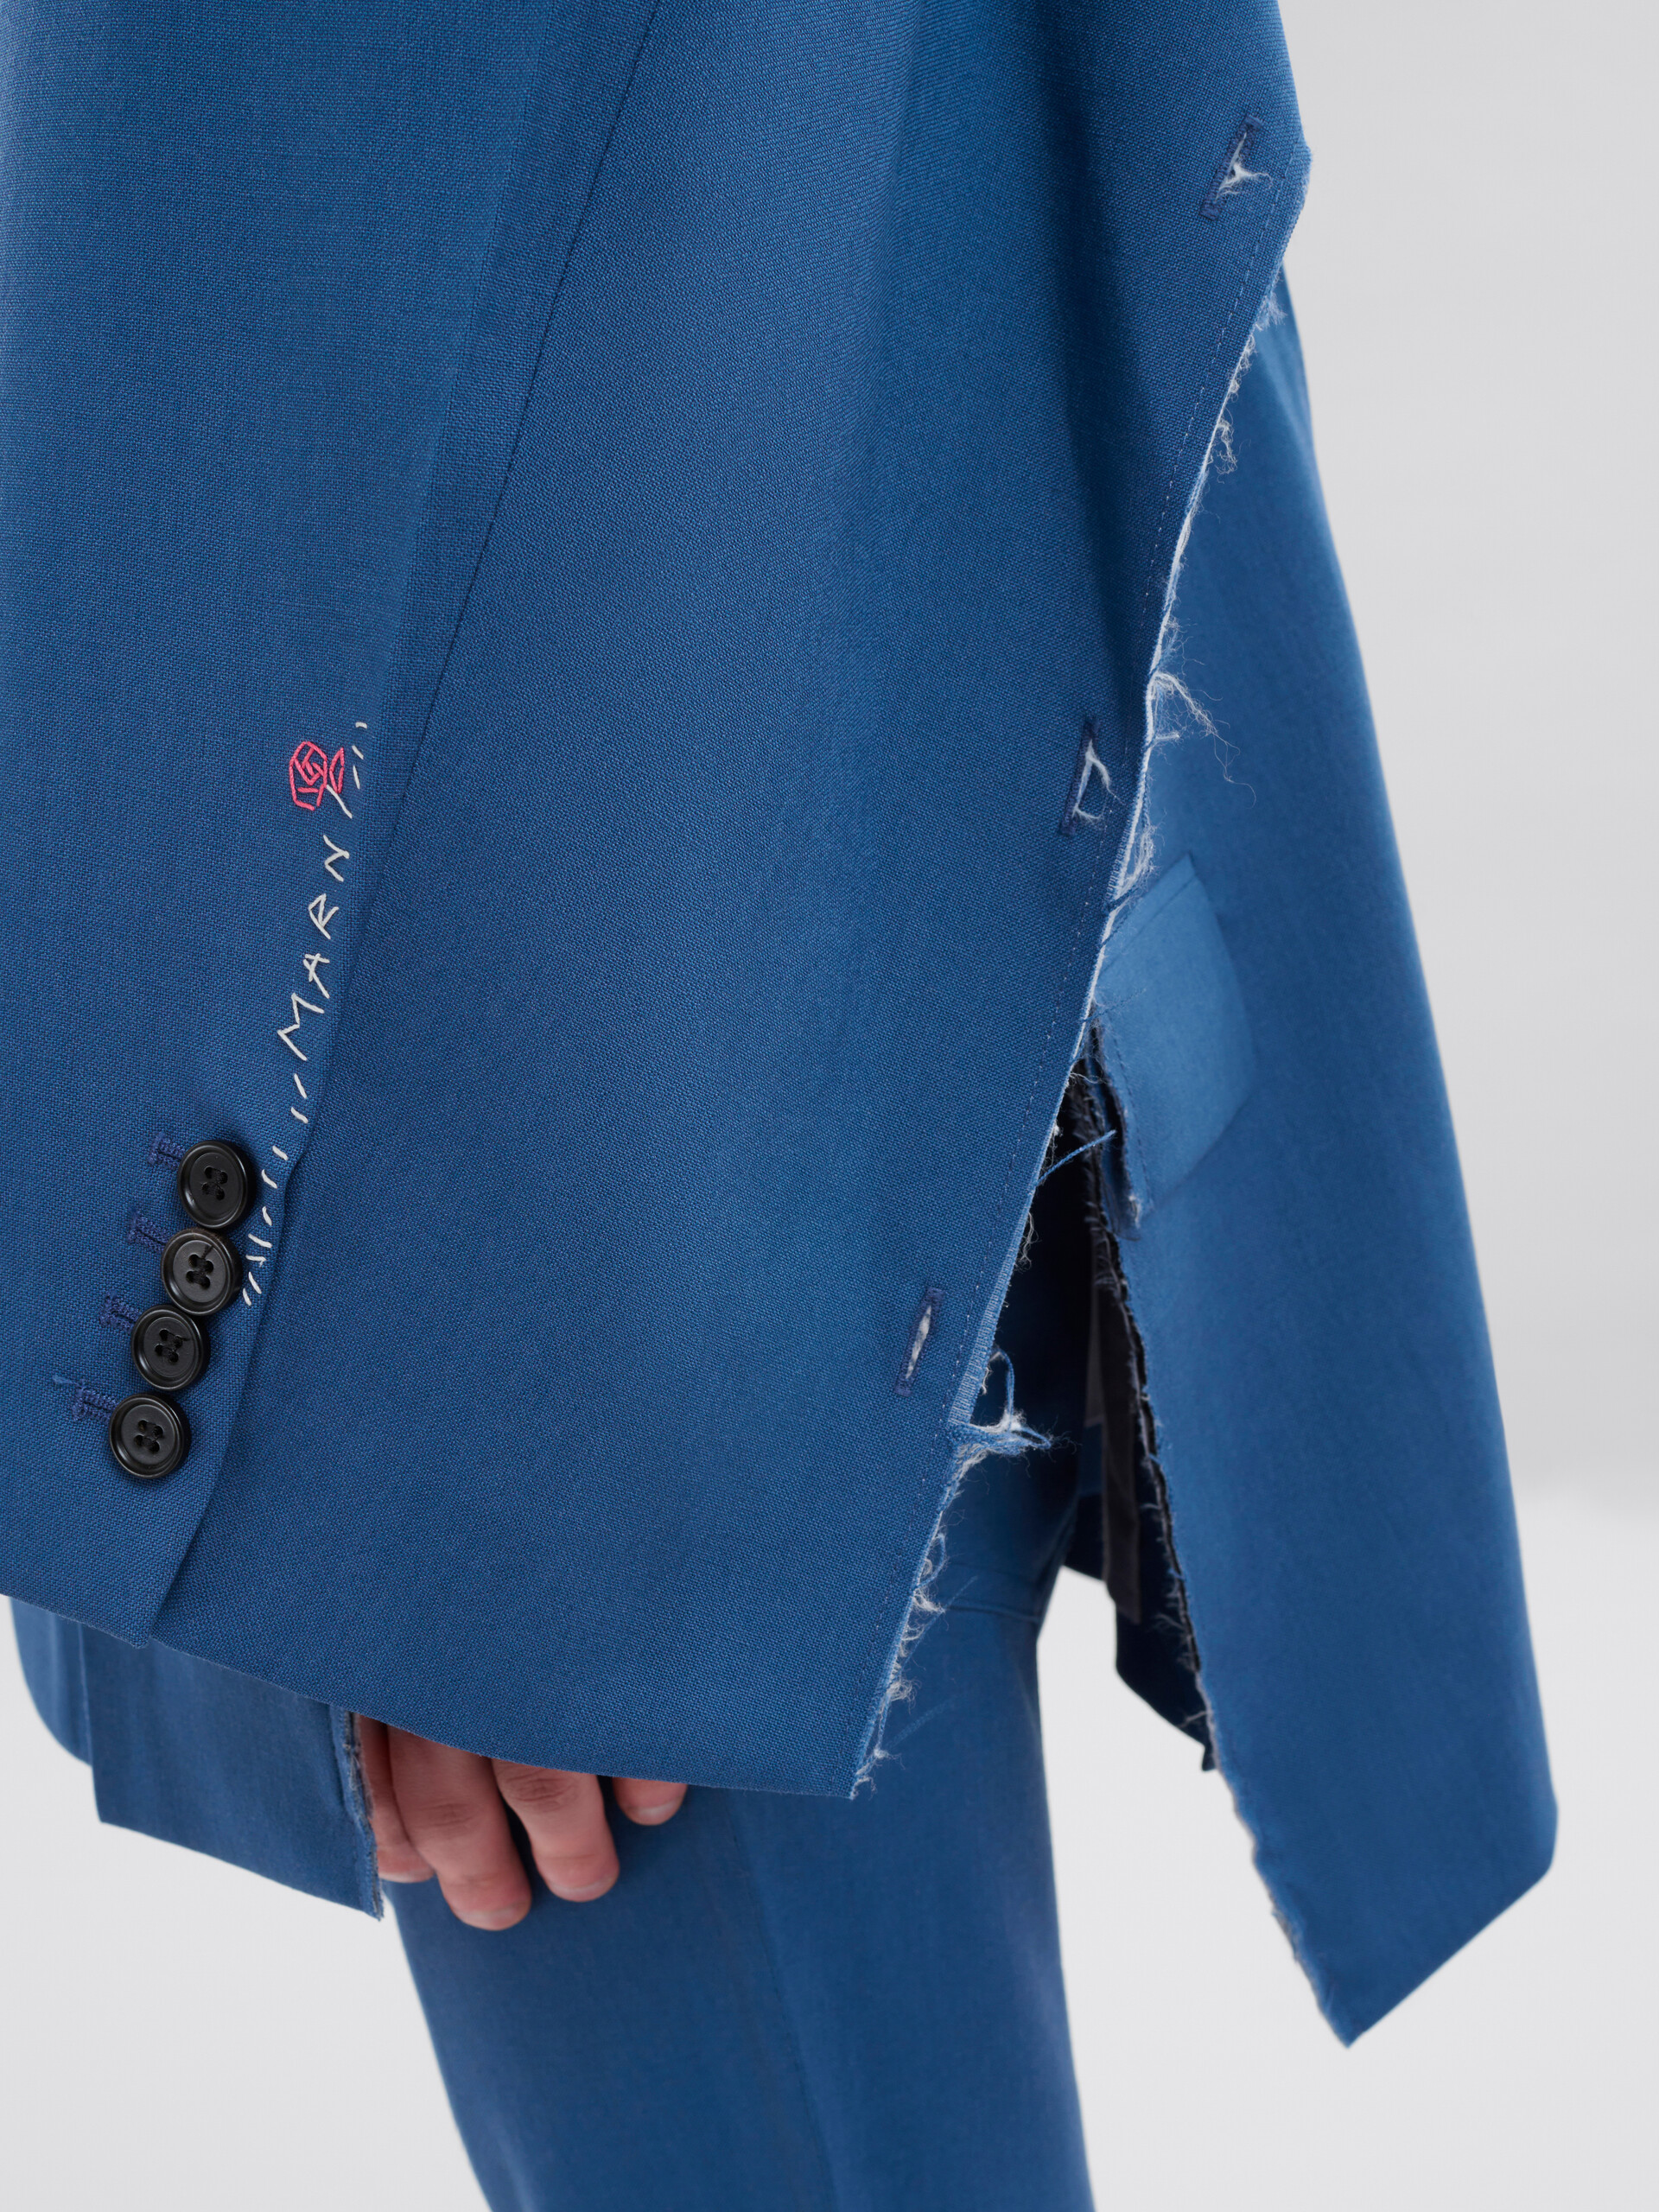 Blazer en laine mohair bleue avec effet raccommodé Marni - Manteaux - Image 5